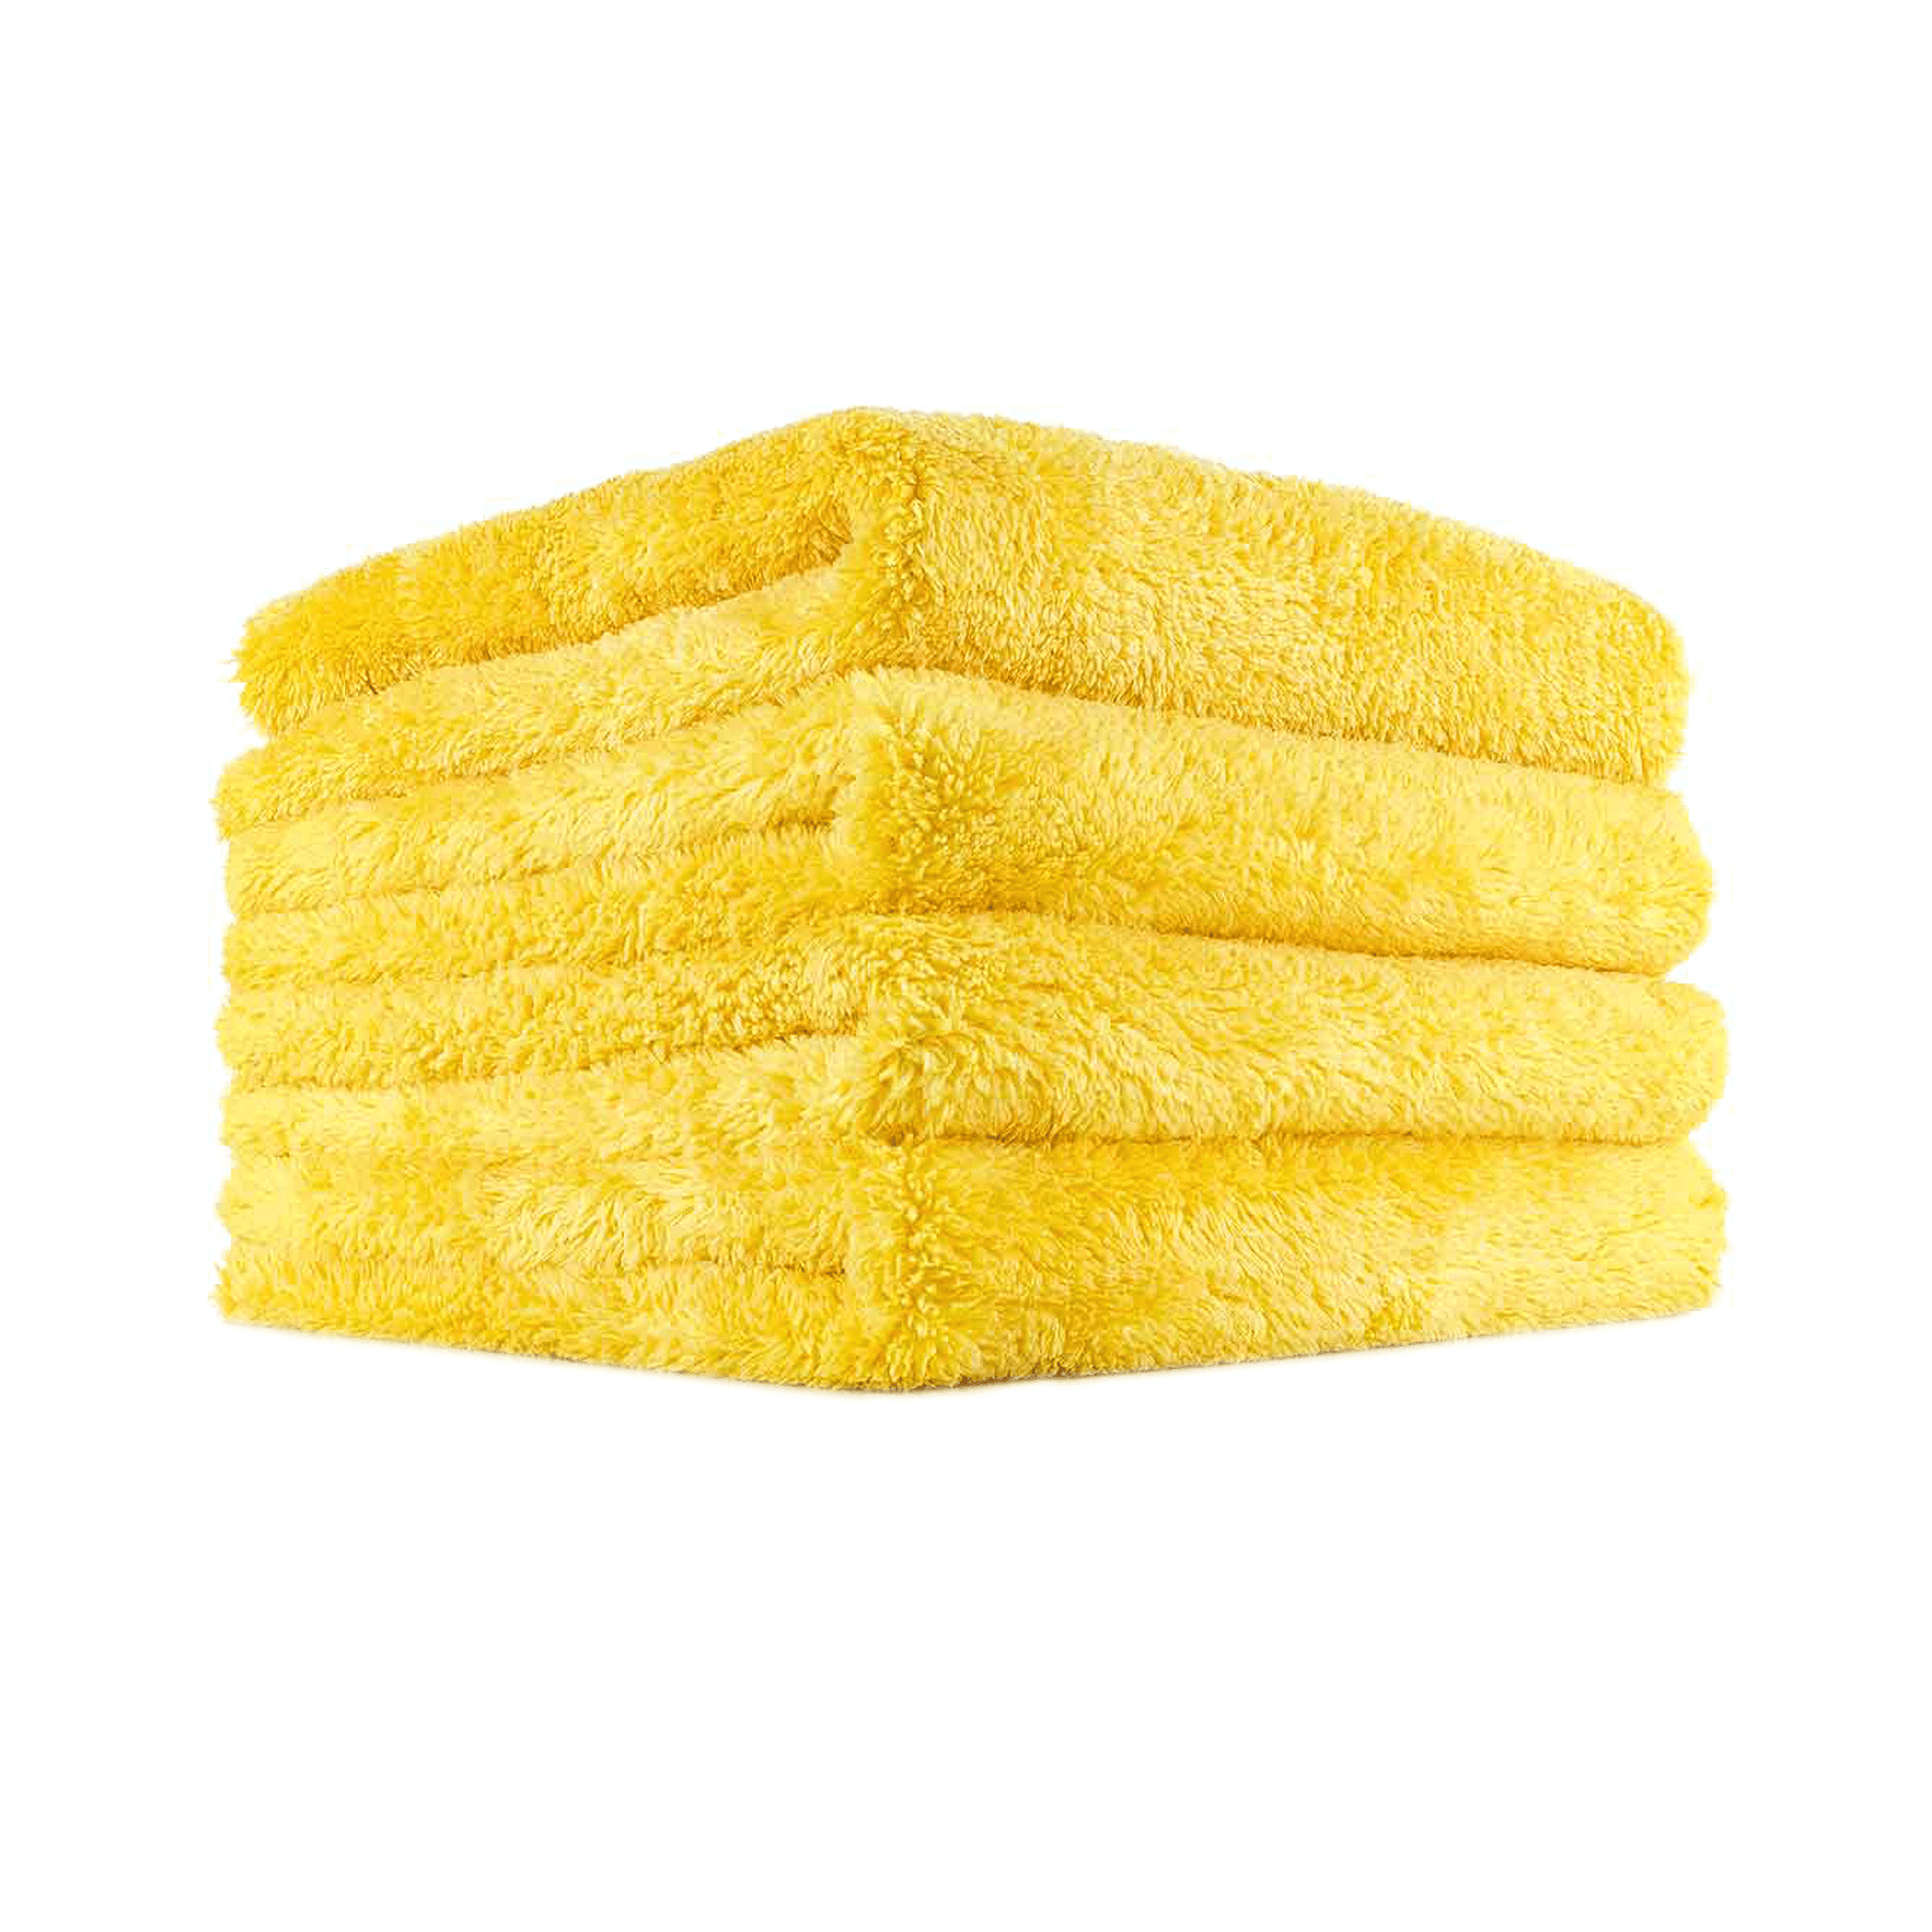 Microfiber Towel Gold